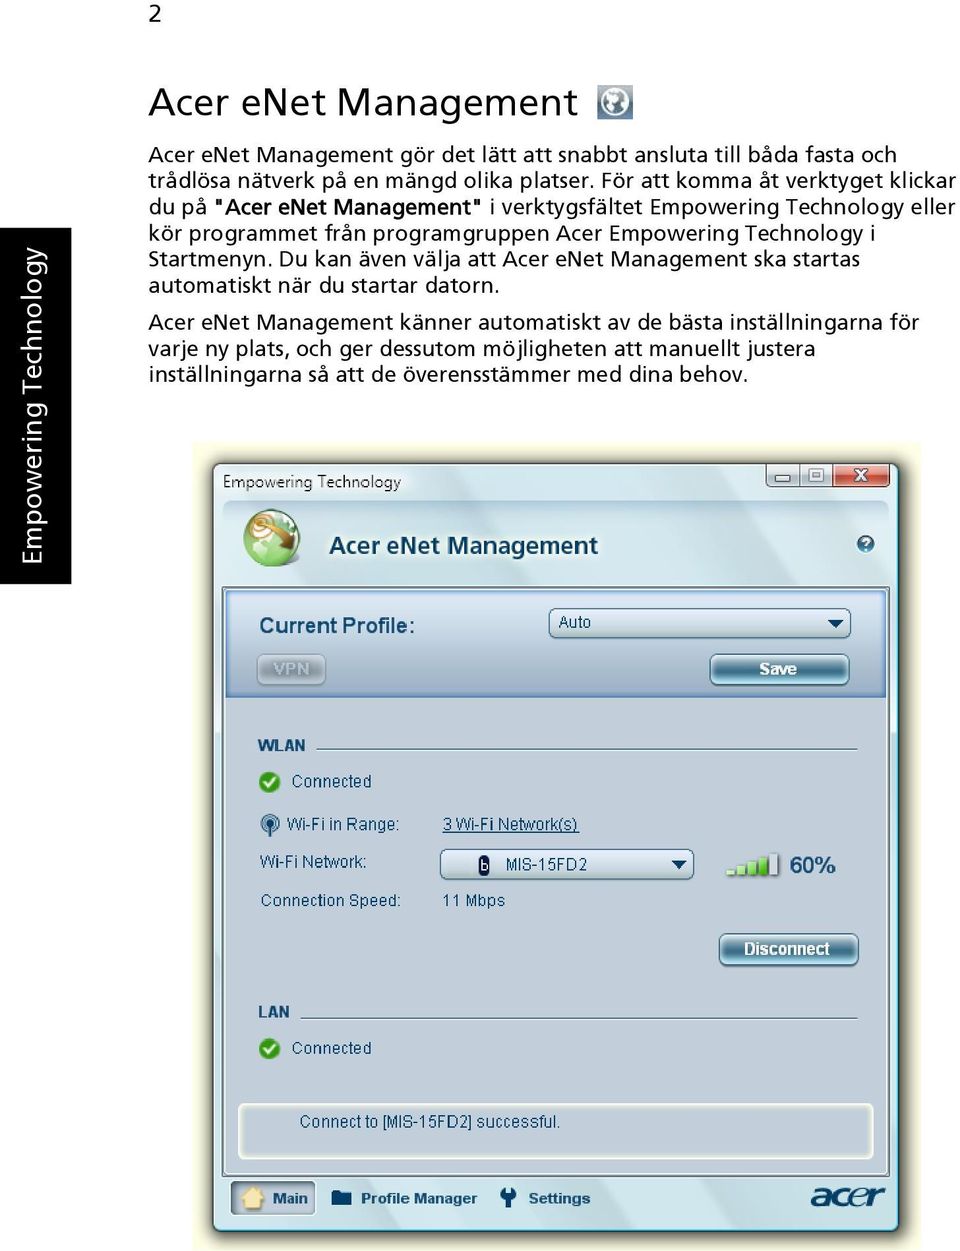 För att komma åt verktyget klickar du på "Acer enet Management" i verktygsfältet Empowering Technology eller kör programmet från programgruppen Acer